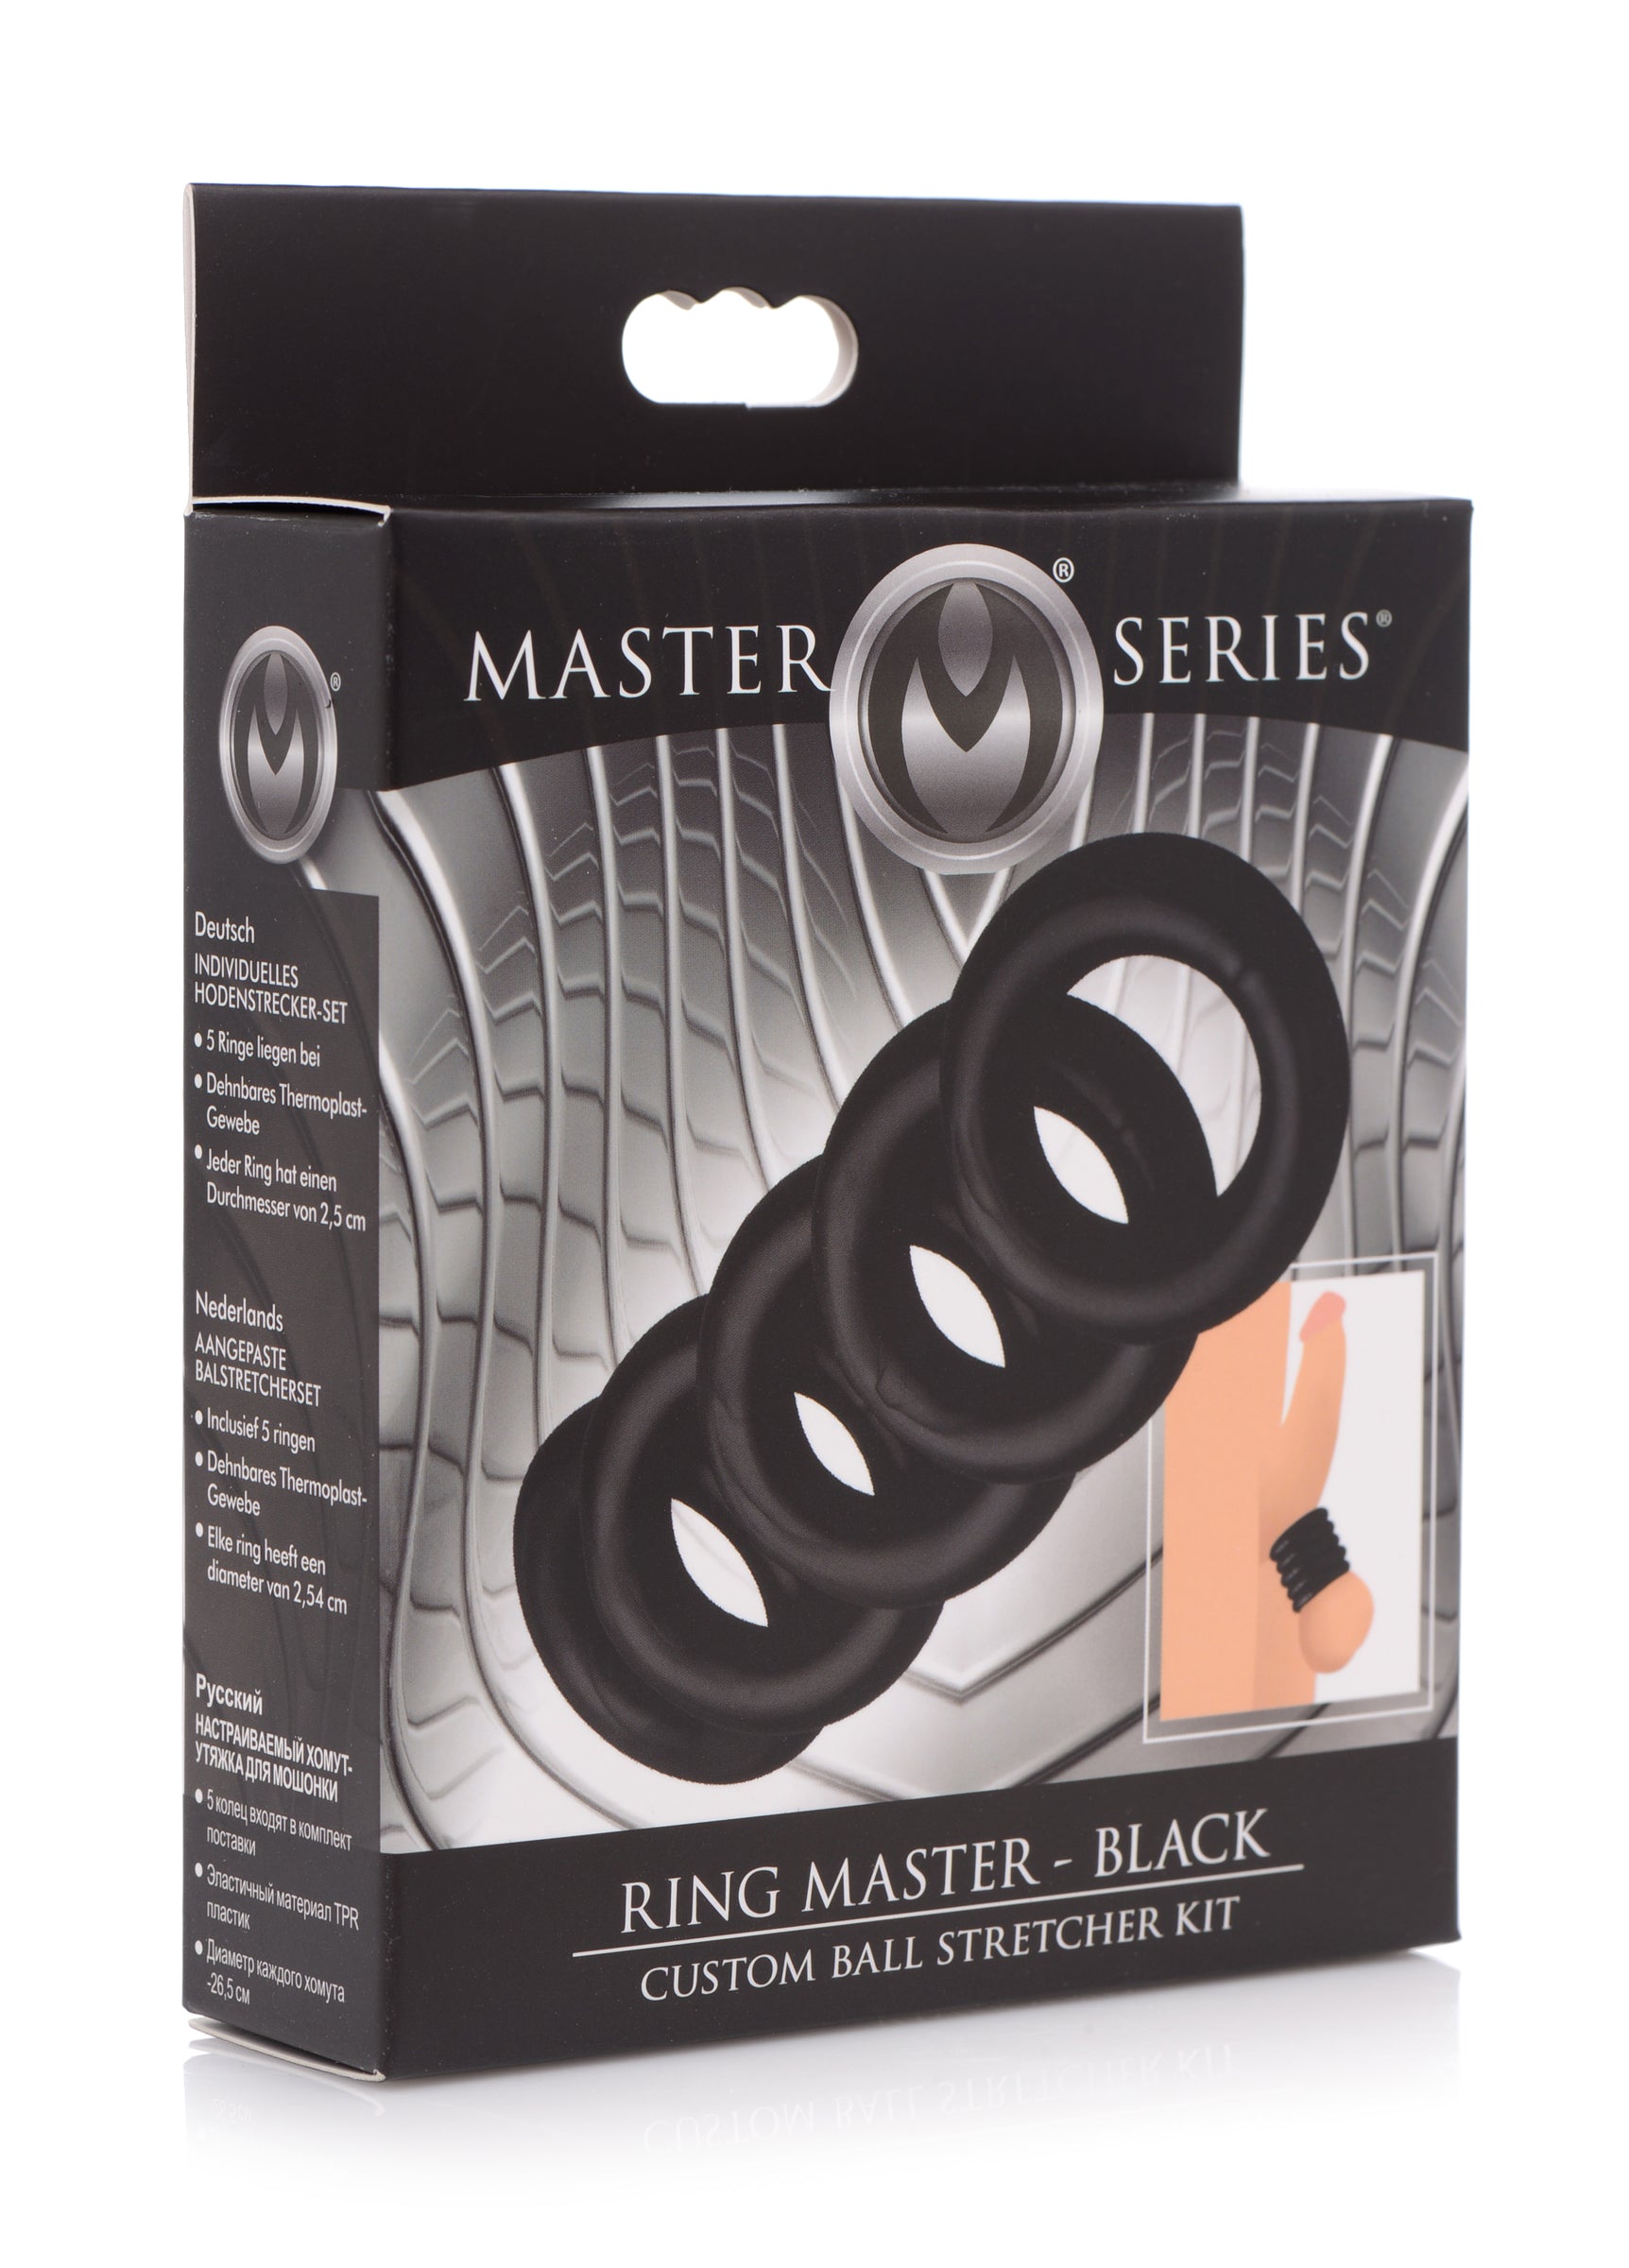 Ring Master Custom Ball Stretcher Kit - Black